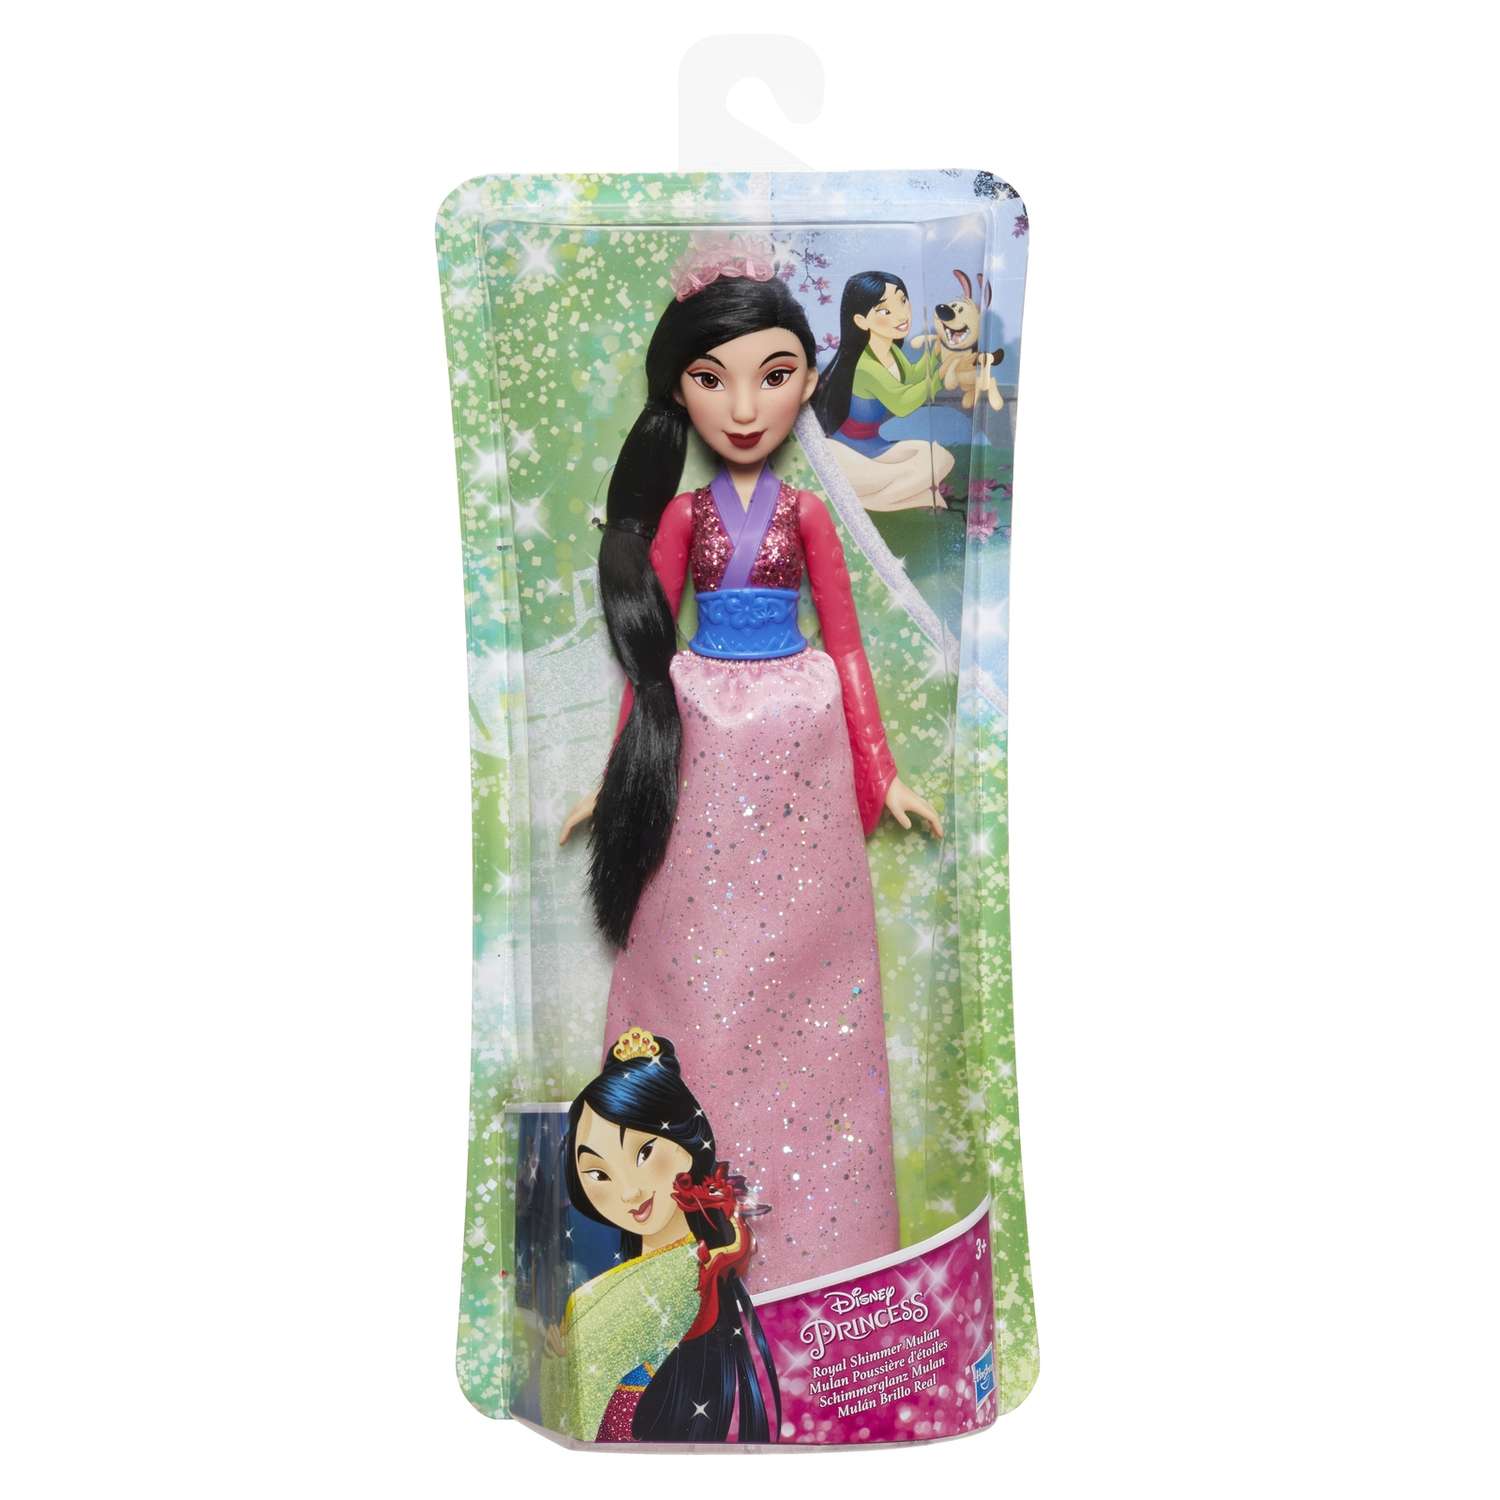 Кукла Disney Princess Hasbro C Мулан E4167EU4 E4022EU4 - фото 2